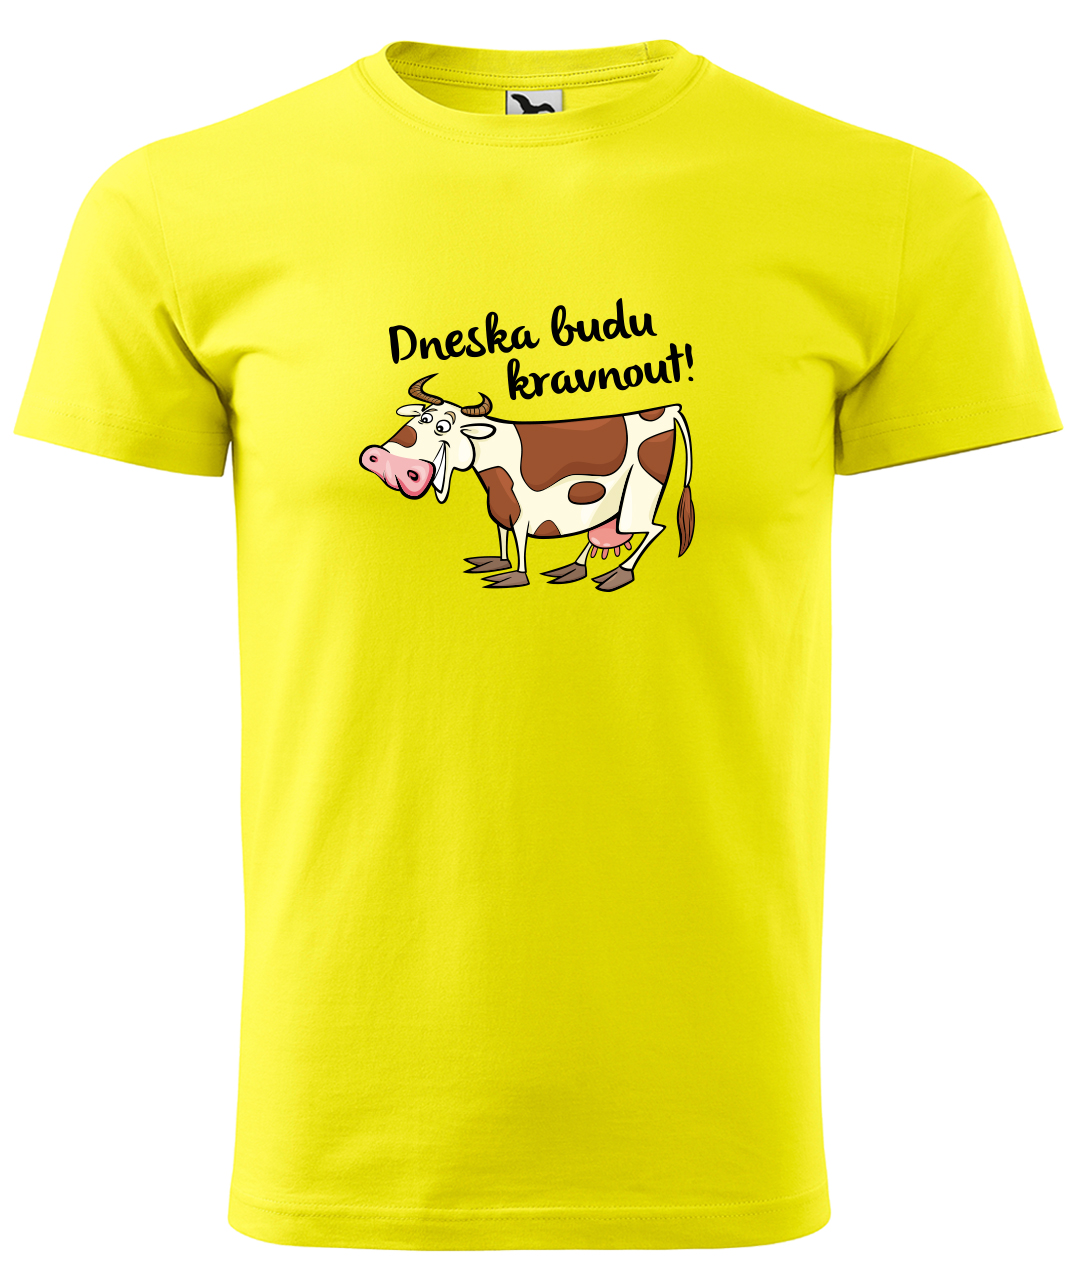 Dětské tričko s krávou - Dneska budu kravnout! Velikost: 4 roky / 110 cm, Barva: Žlutá (04), Délka rukávu: Krátký rukáv